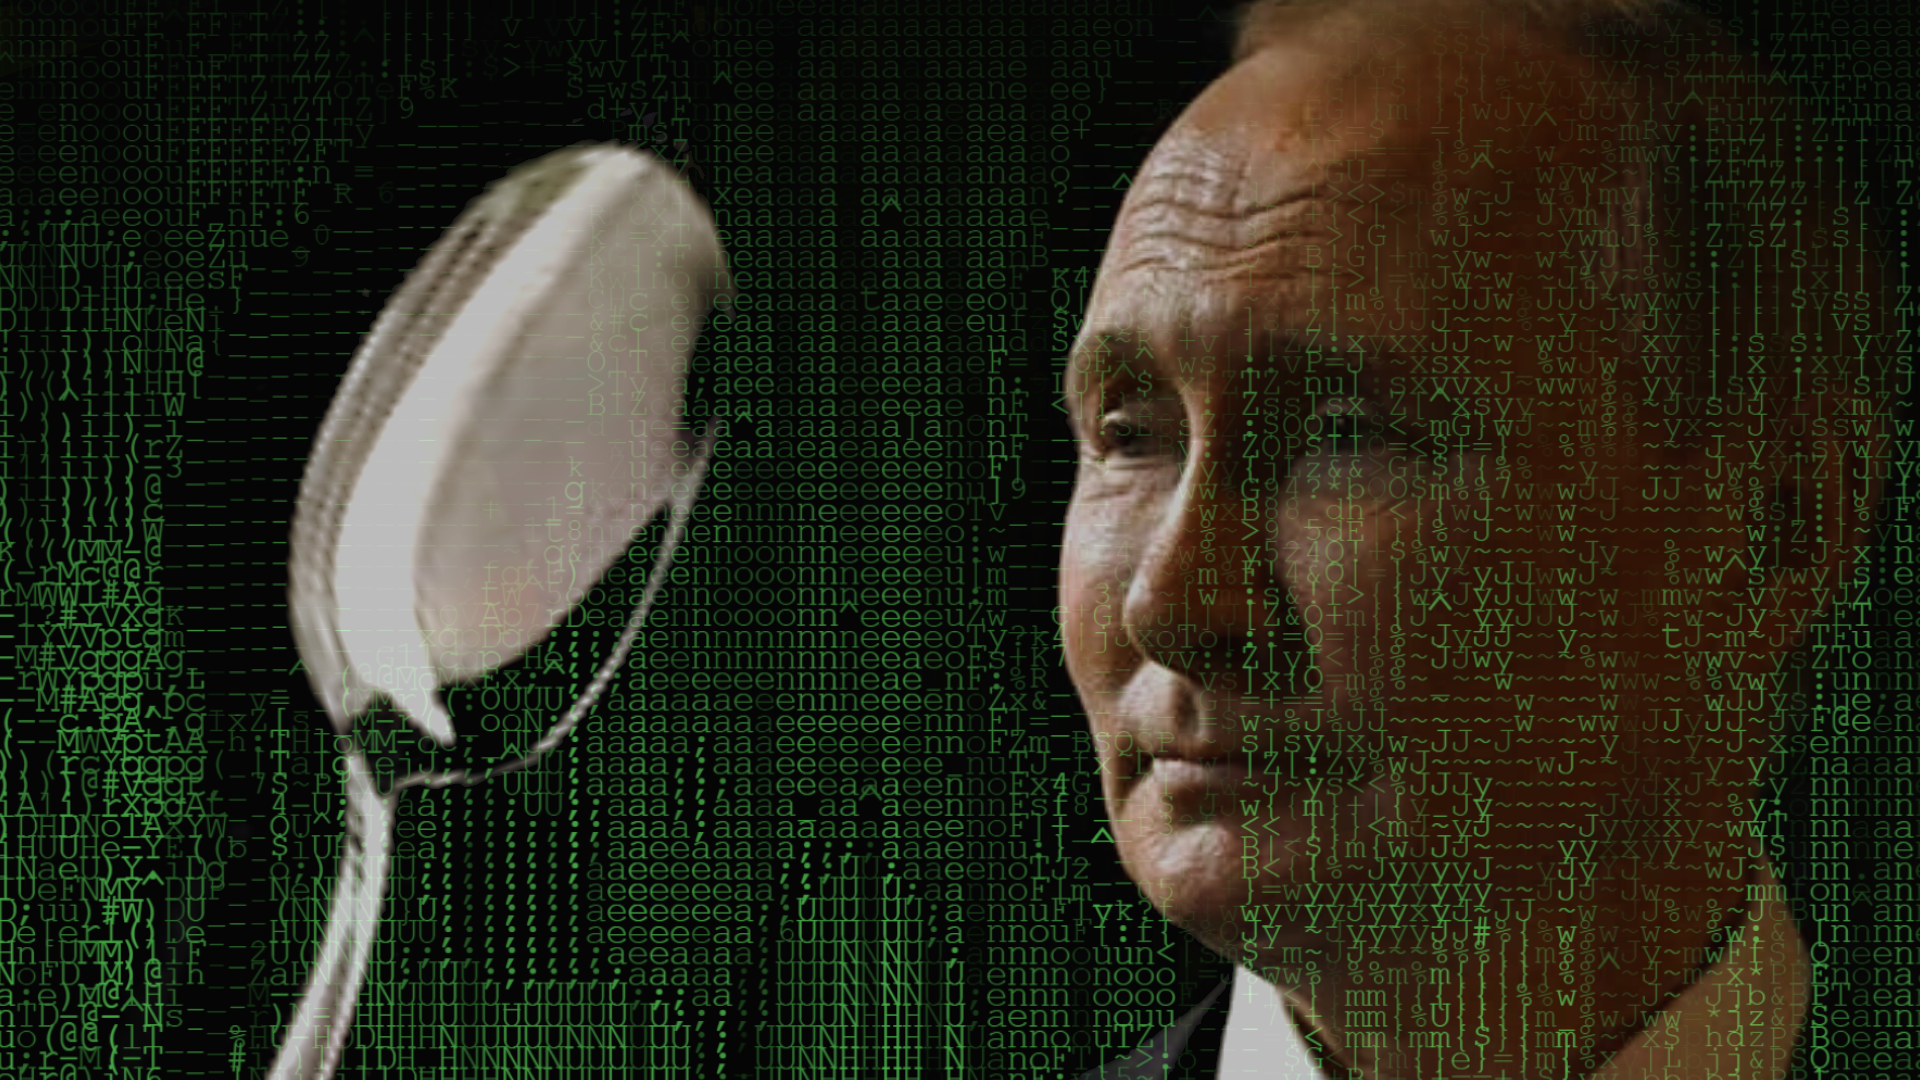 Így jelennek meg a magyar nyelvű hírmédiában az orosz dezinformációs propagandagépezet trükkös hazugságai